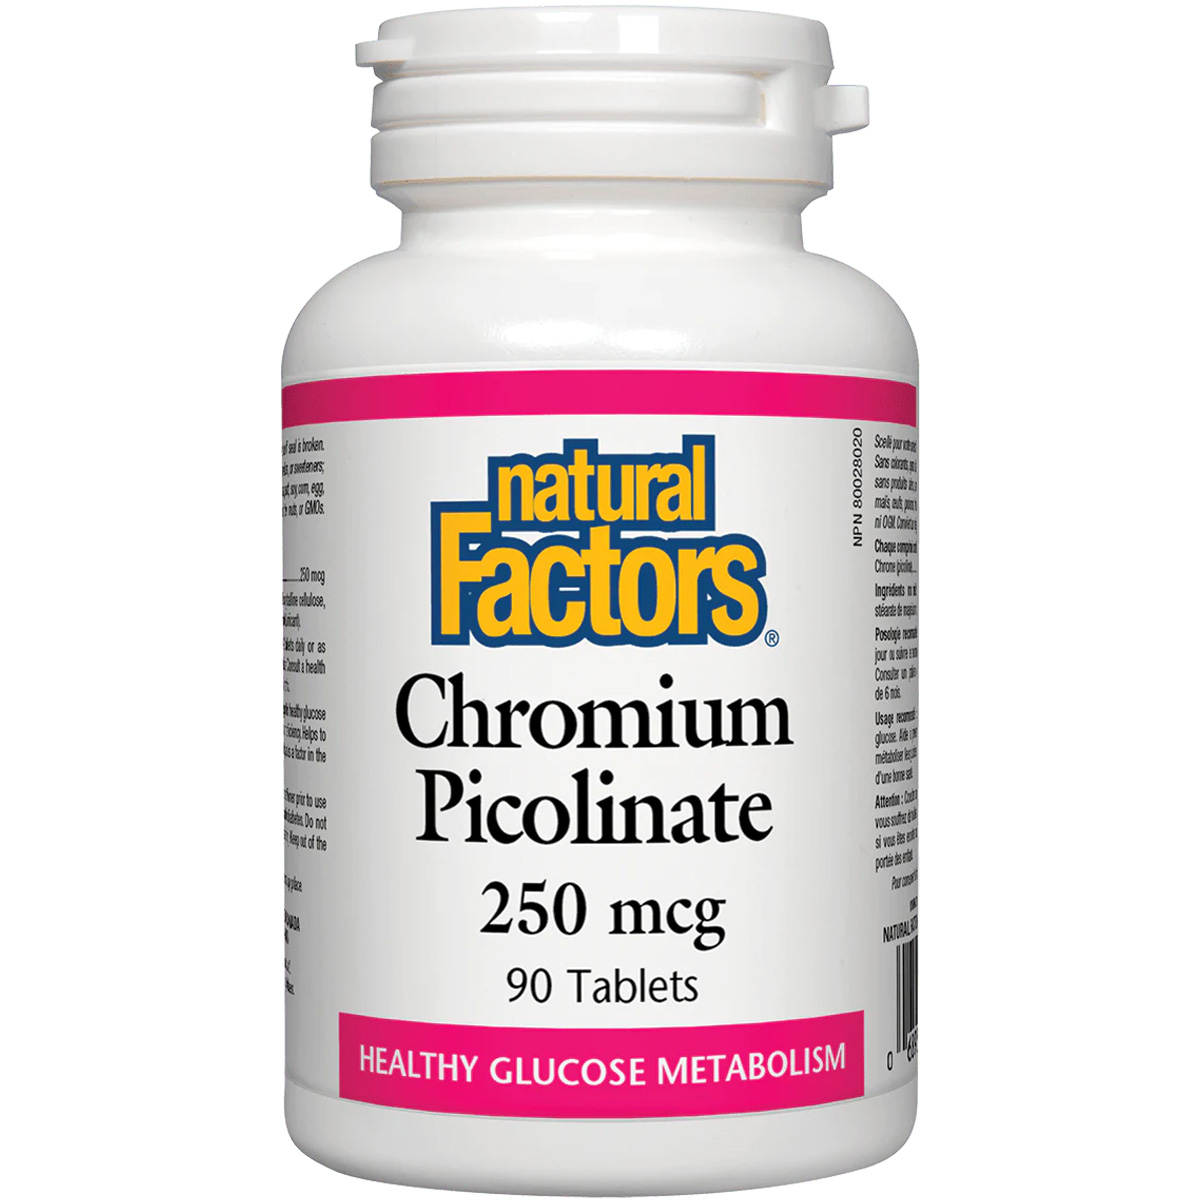 Natural Factors Chromium Picolinate, 250 mcg, 90 Tablets